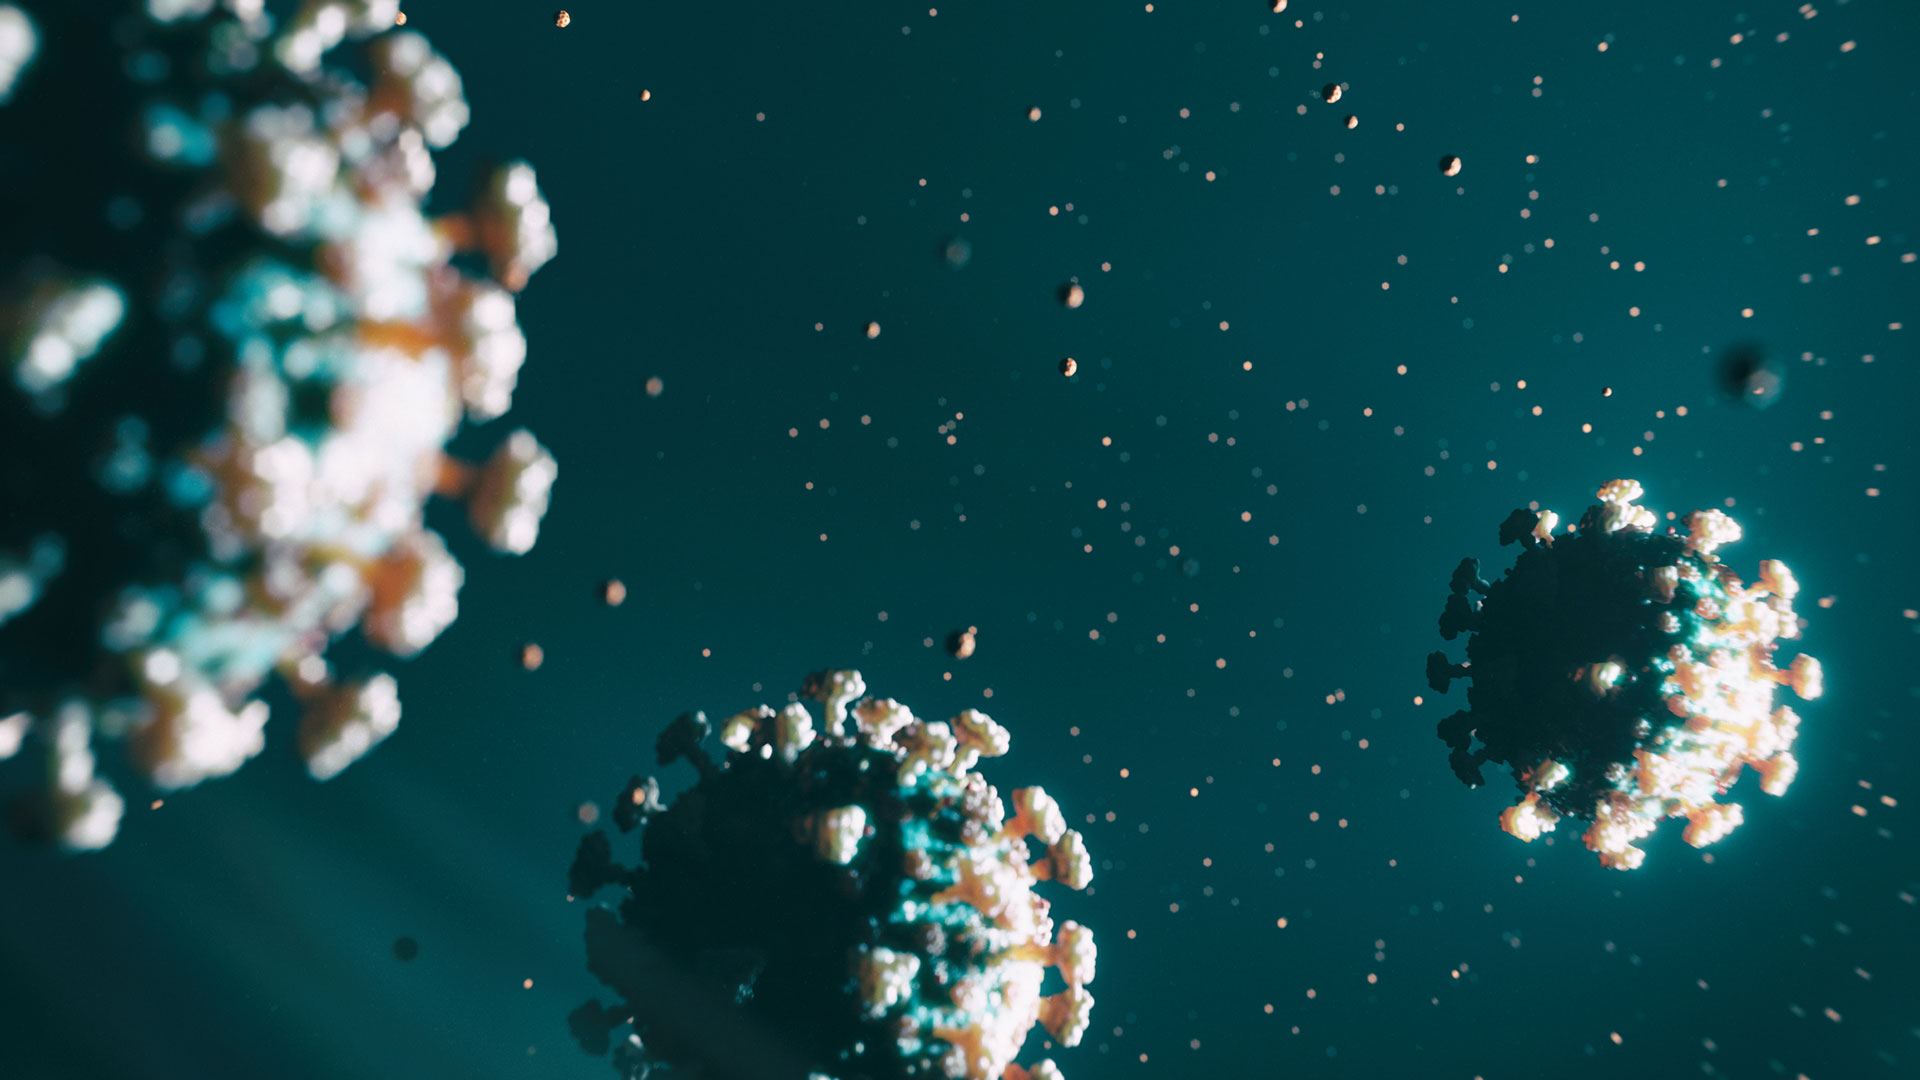 Una hipótesis, aún no probada, es que el coronavirus que causó la pandemia podría tenido origen en un fuga de un laboratorio de alta bioseguridad en China. La otra hipótesis es que hubo un salto del virus a través de algún animal silvestre/ Crédito: Getty